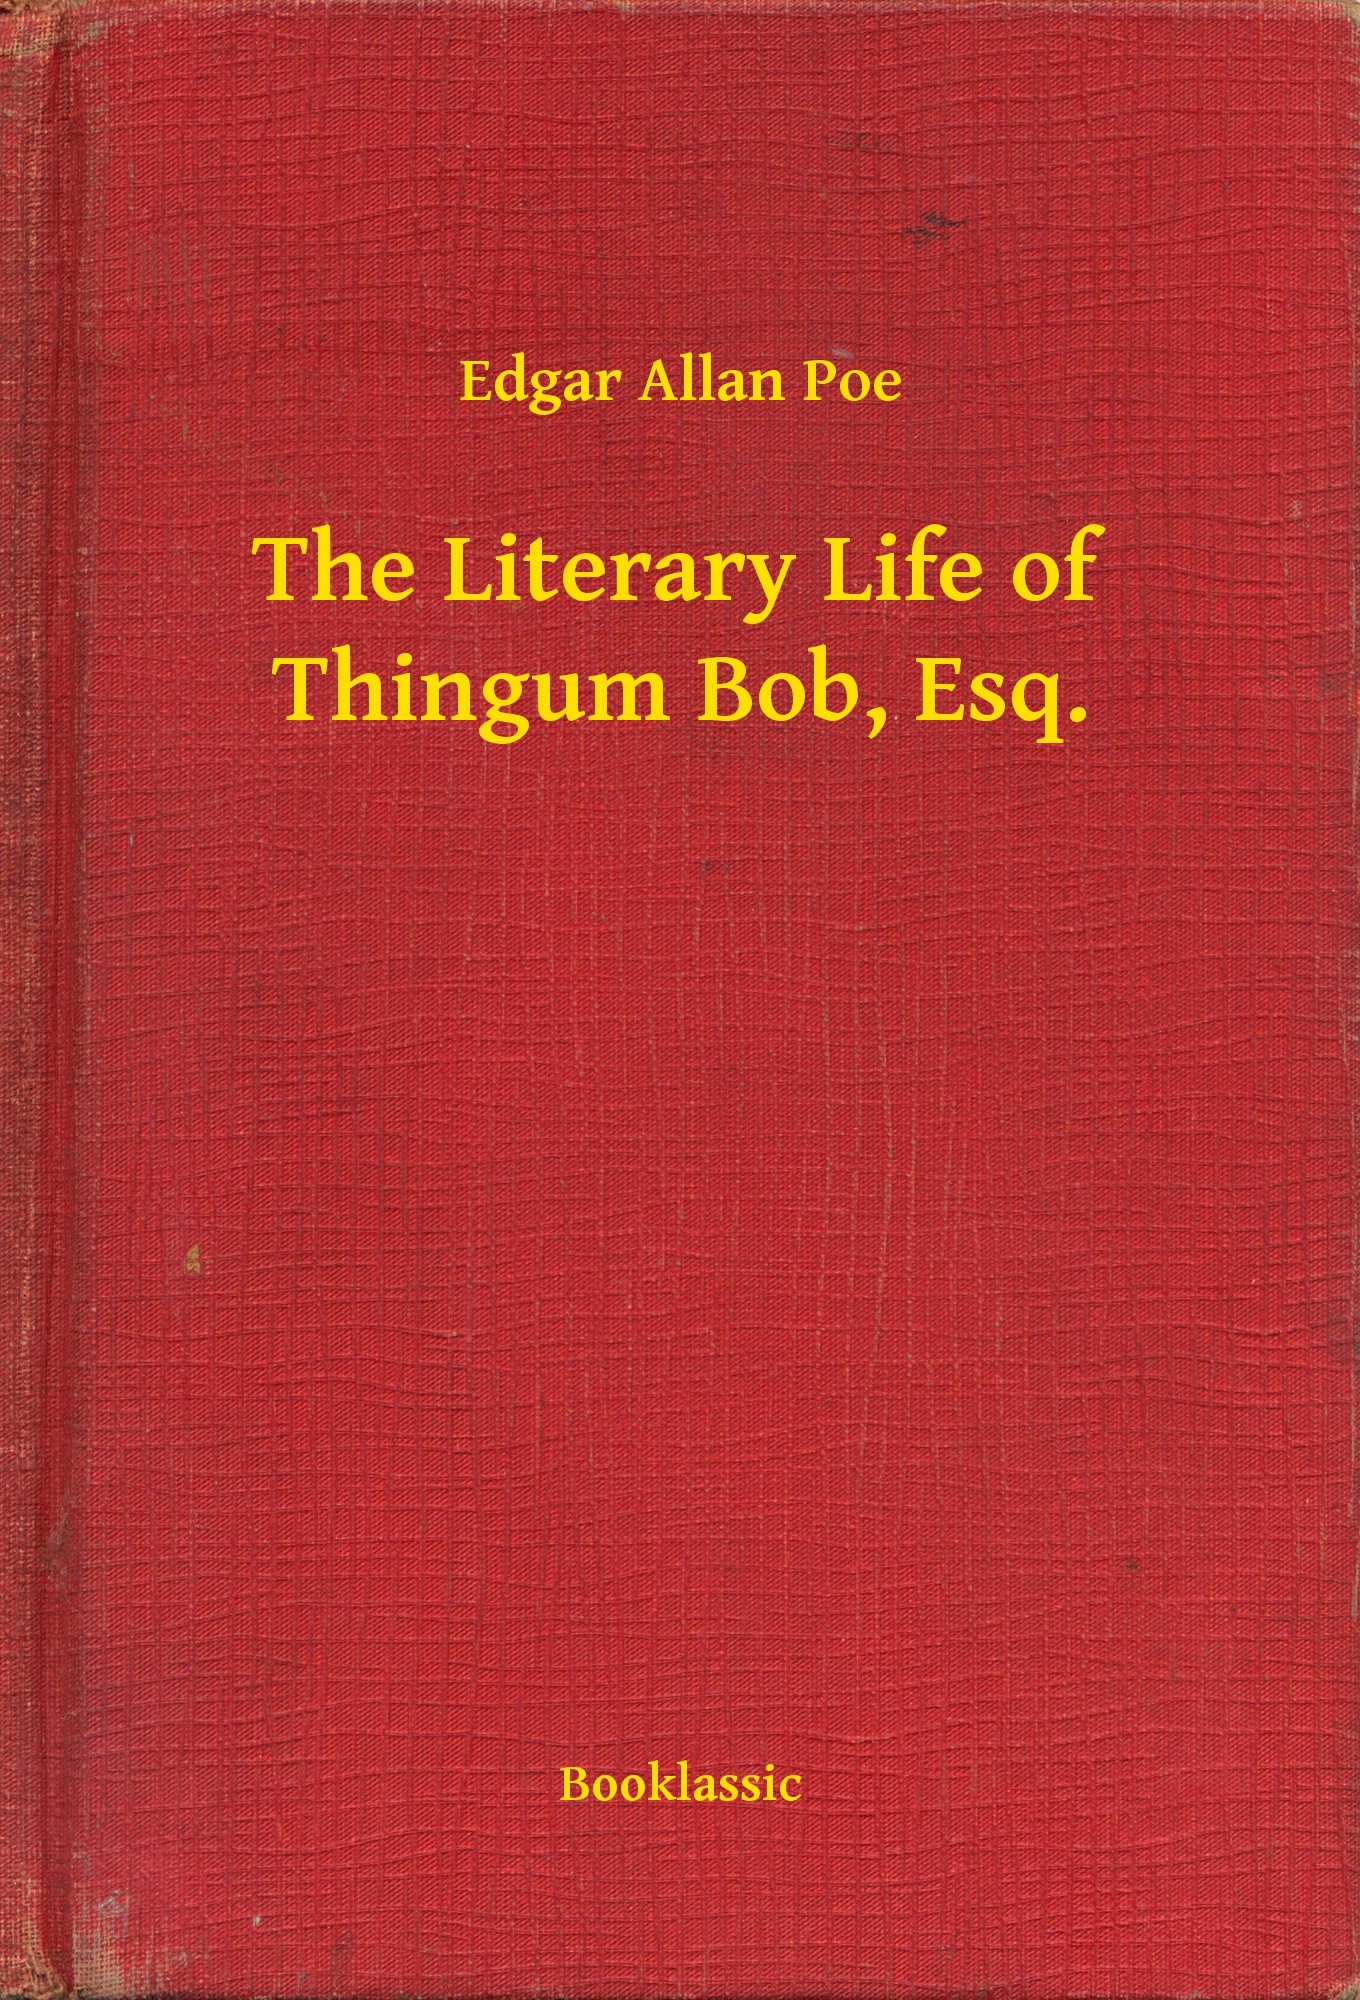 The Literary Life of Thingum Bob, Esq.